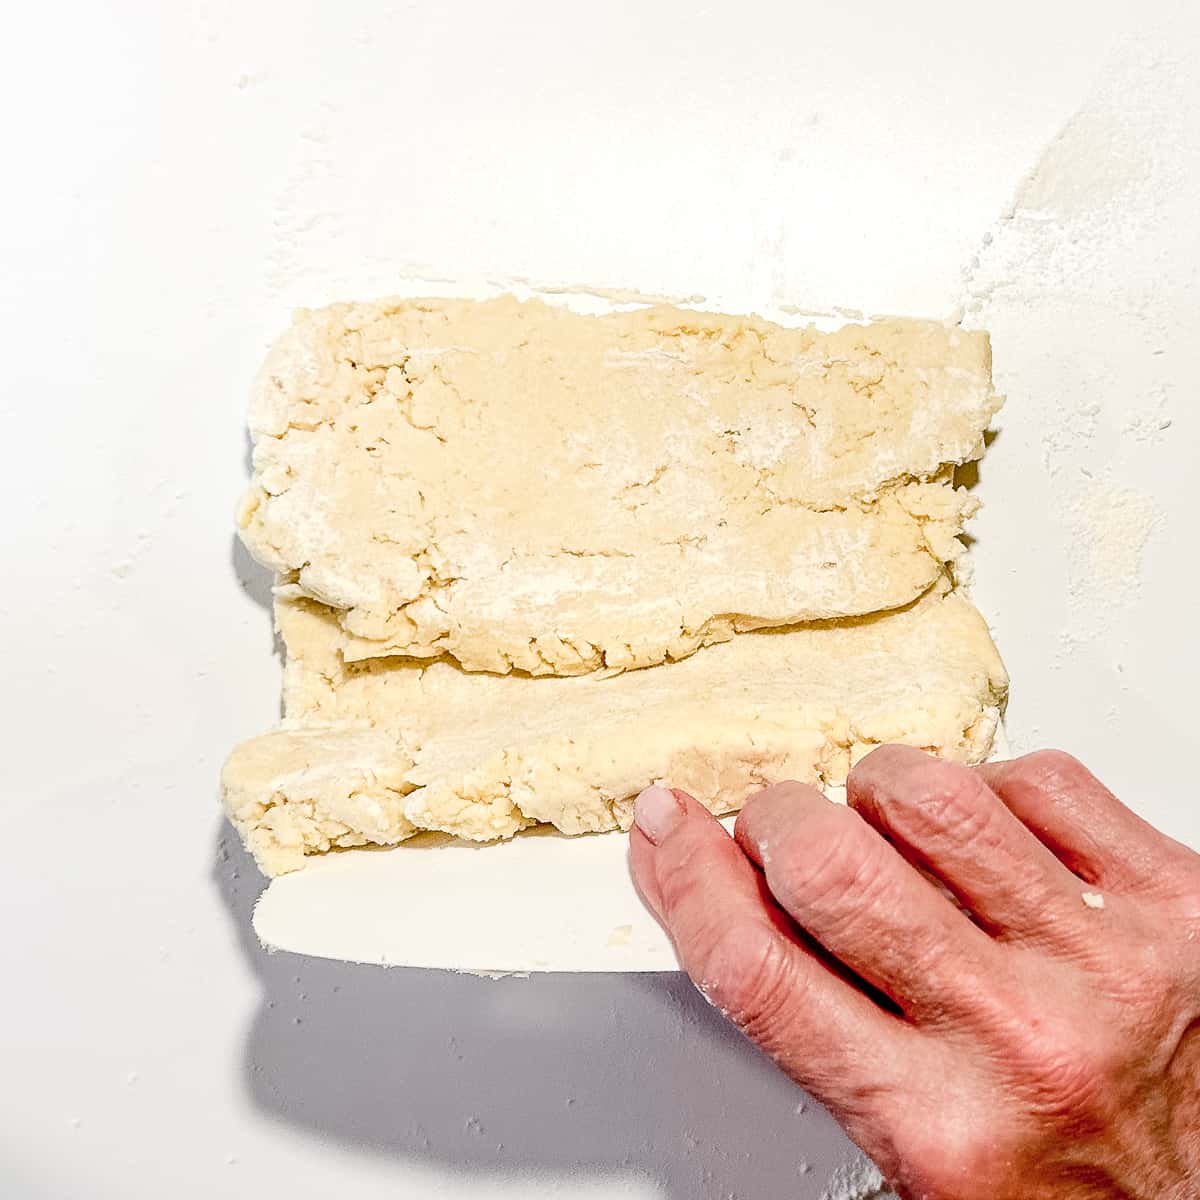 folding biscuit dough with a dough scraper.